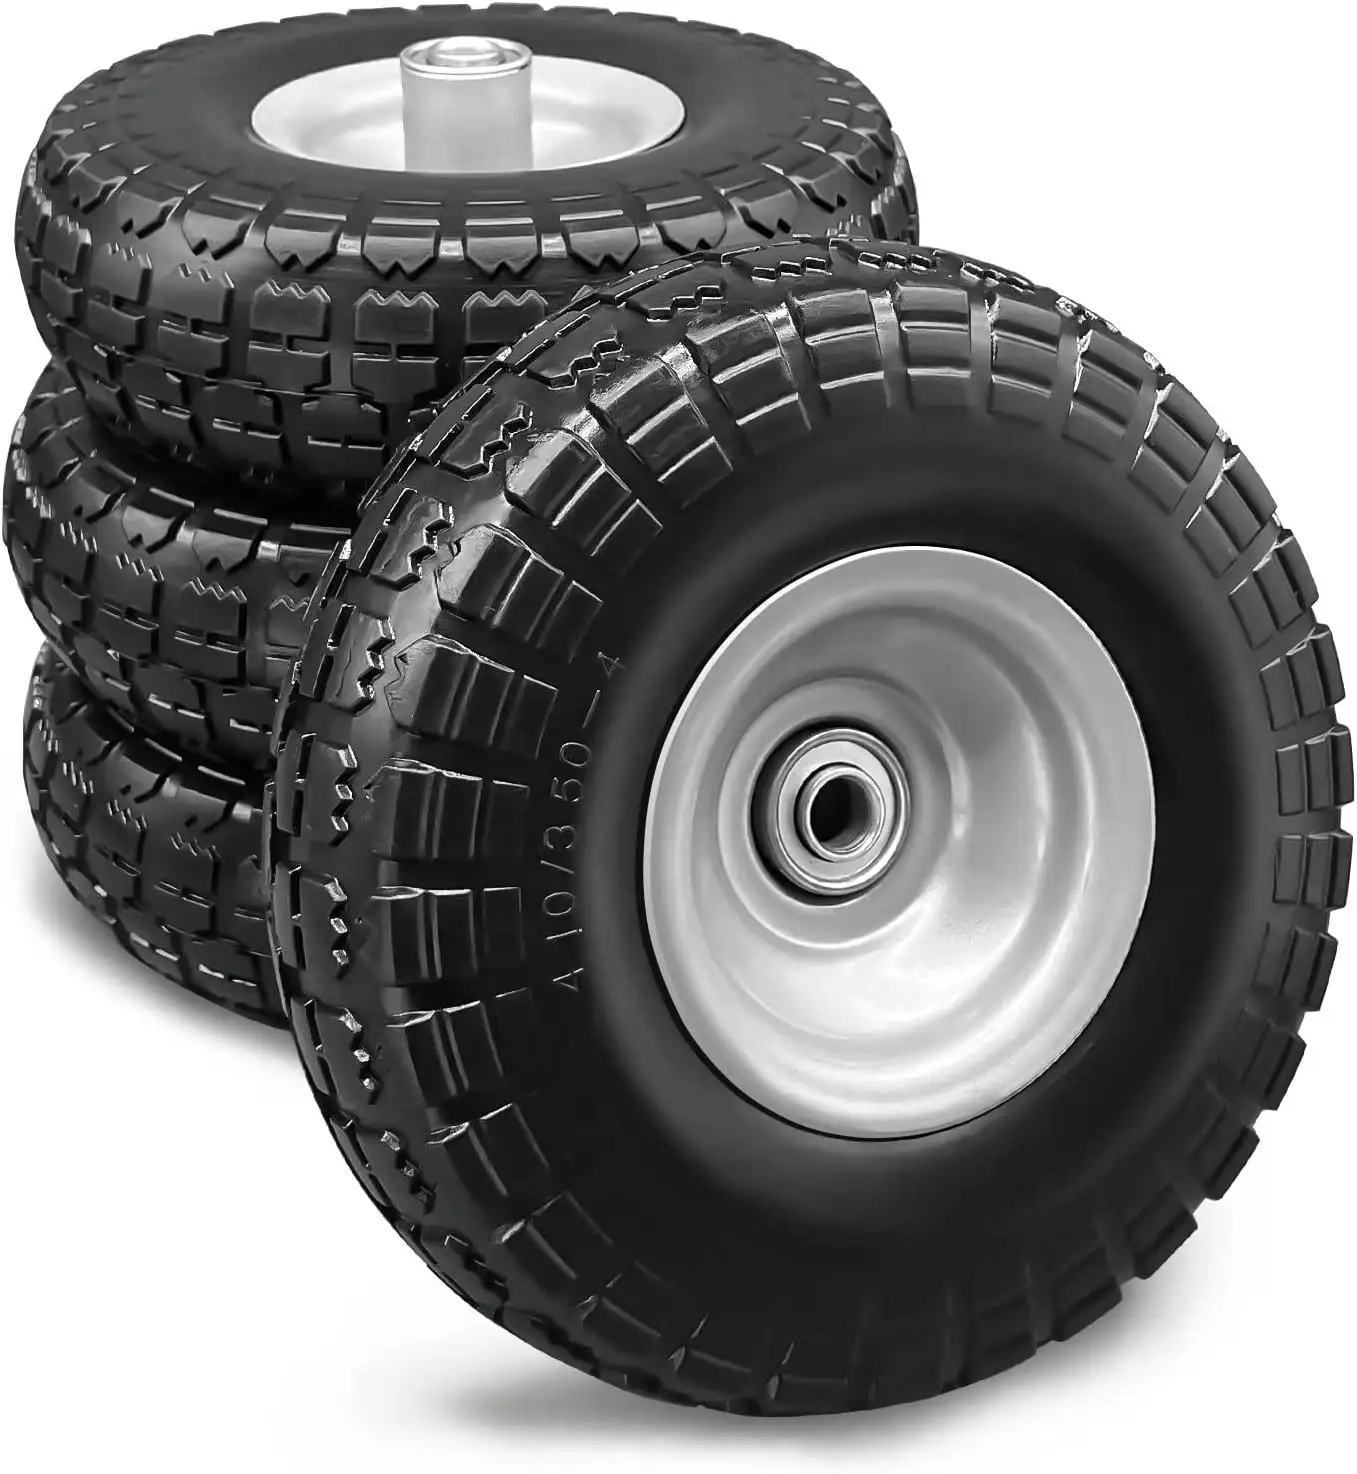 HKT1001 wholesale wheel barrow hand truck garden carts flat free solid rubber tyre wheels 10 inch 350-4 pu foam wheel